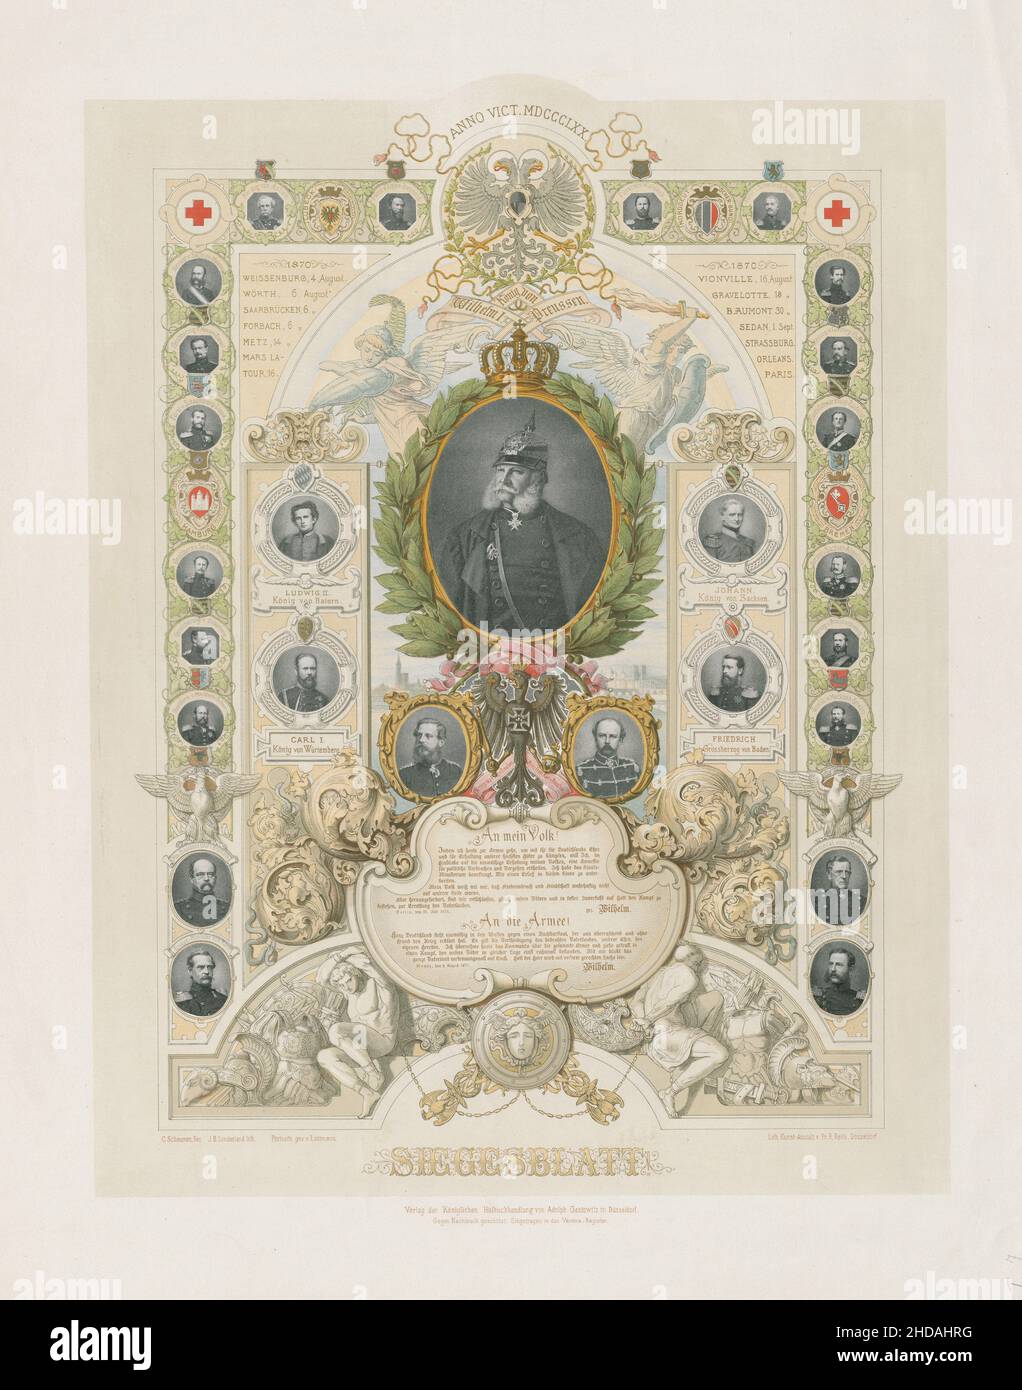 Litografía alemana: Hoja de la victoria! 1870 Una litografía que representa la victoria de Alemania (Prusia) en la Guerra Franco-Prusiana de 1870-1871. Ludwig II koni Foto de stock